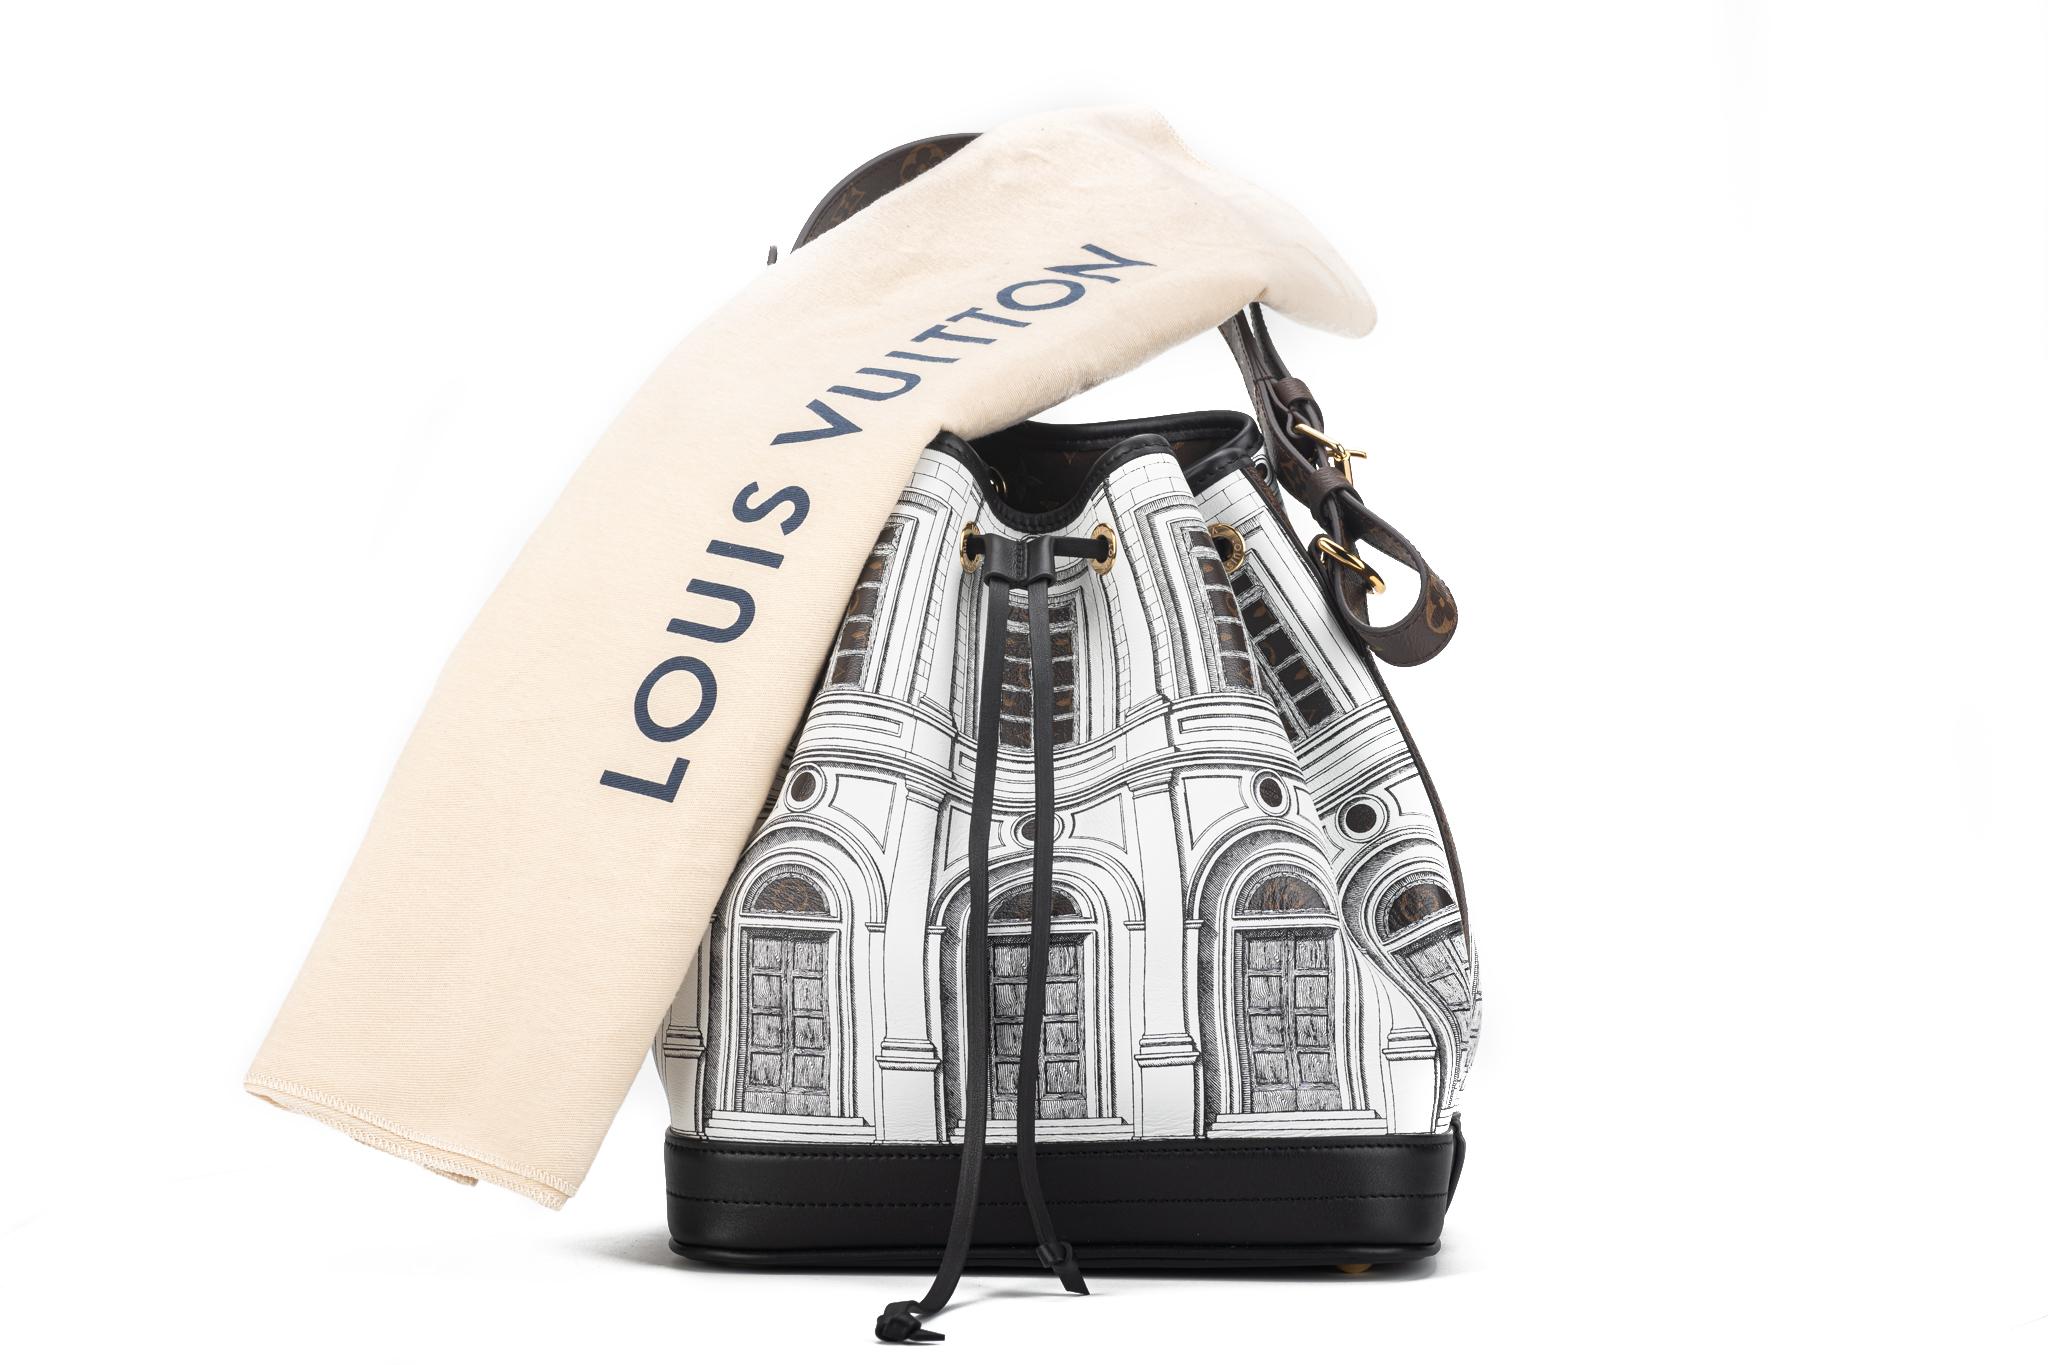 Louis Vuitton X Fornasetti Monogram Architettura Noe NM aus Kalbsleder in Schwarz und Weiß. Diese Umhängetasche ist eine Collaboration zwischen Louis Vuitton und Fornasetti. Die Tasche ist mit einem Gebäudedruck und beschichtetem Monogram-Gewebe